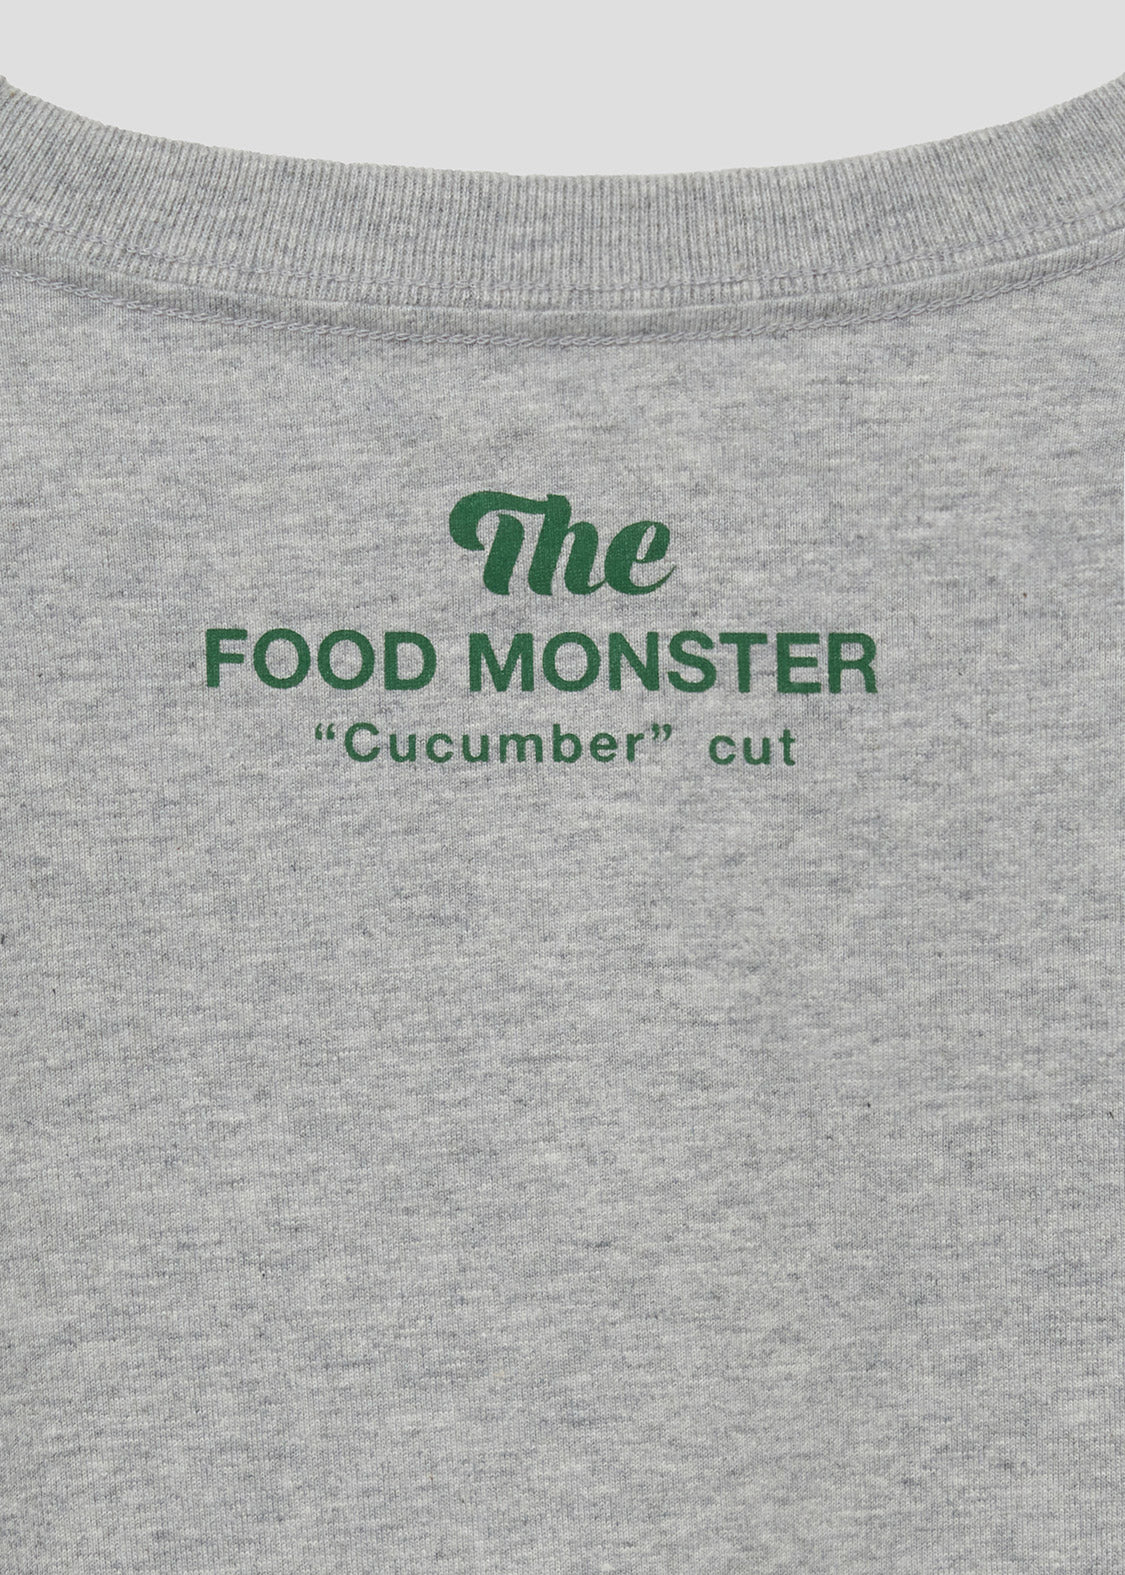 Cucumber Monster